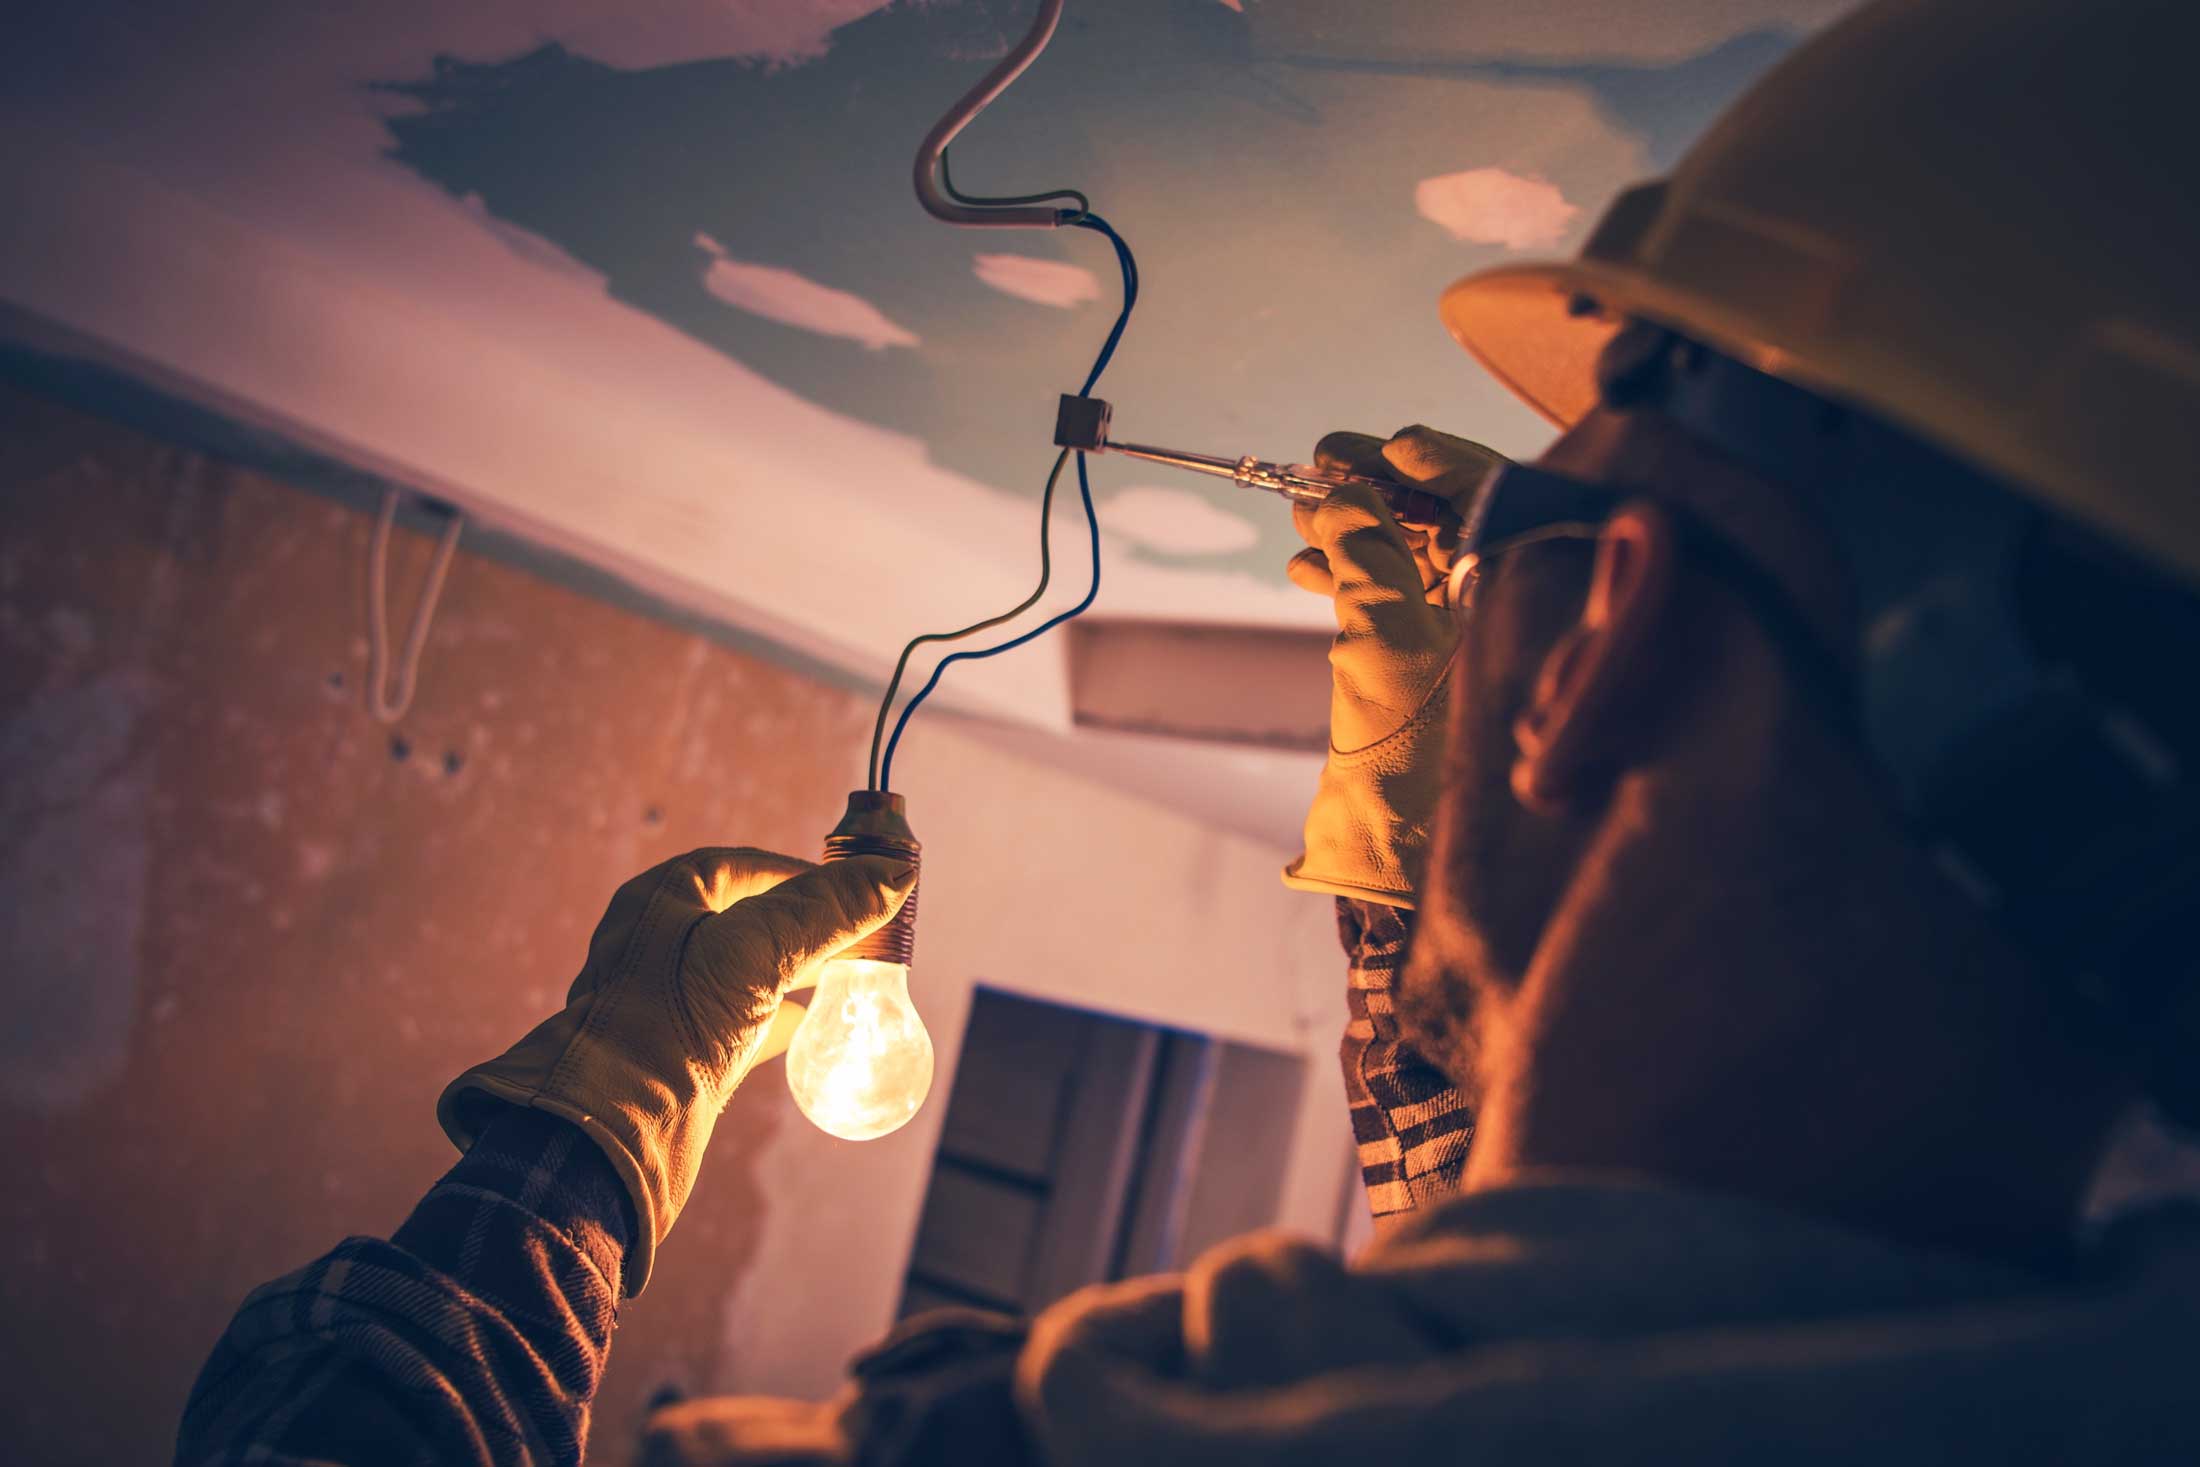 électricien installant une ampoule